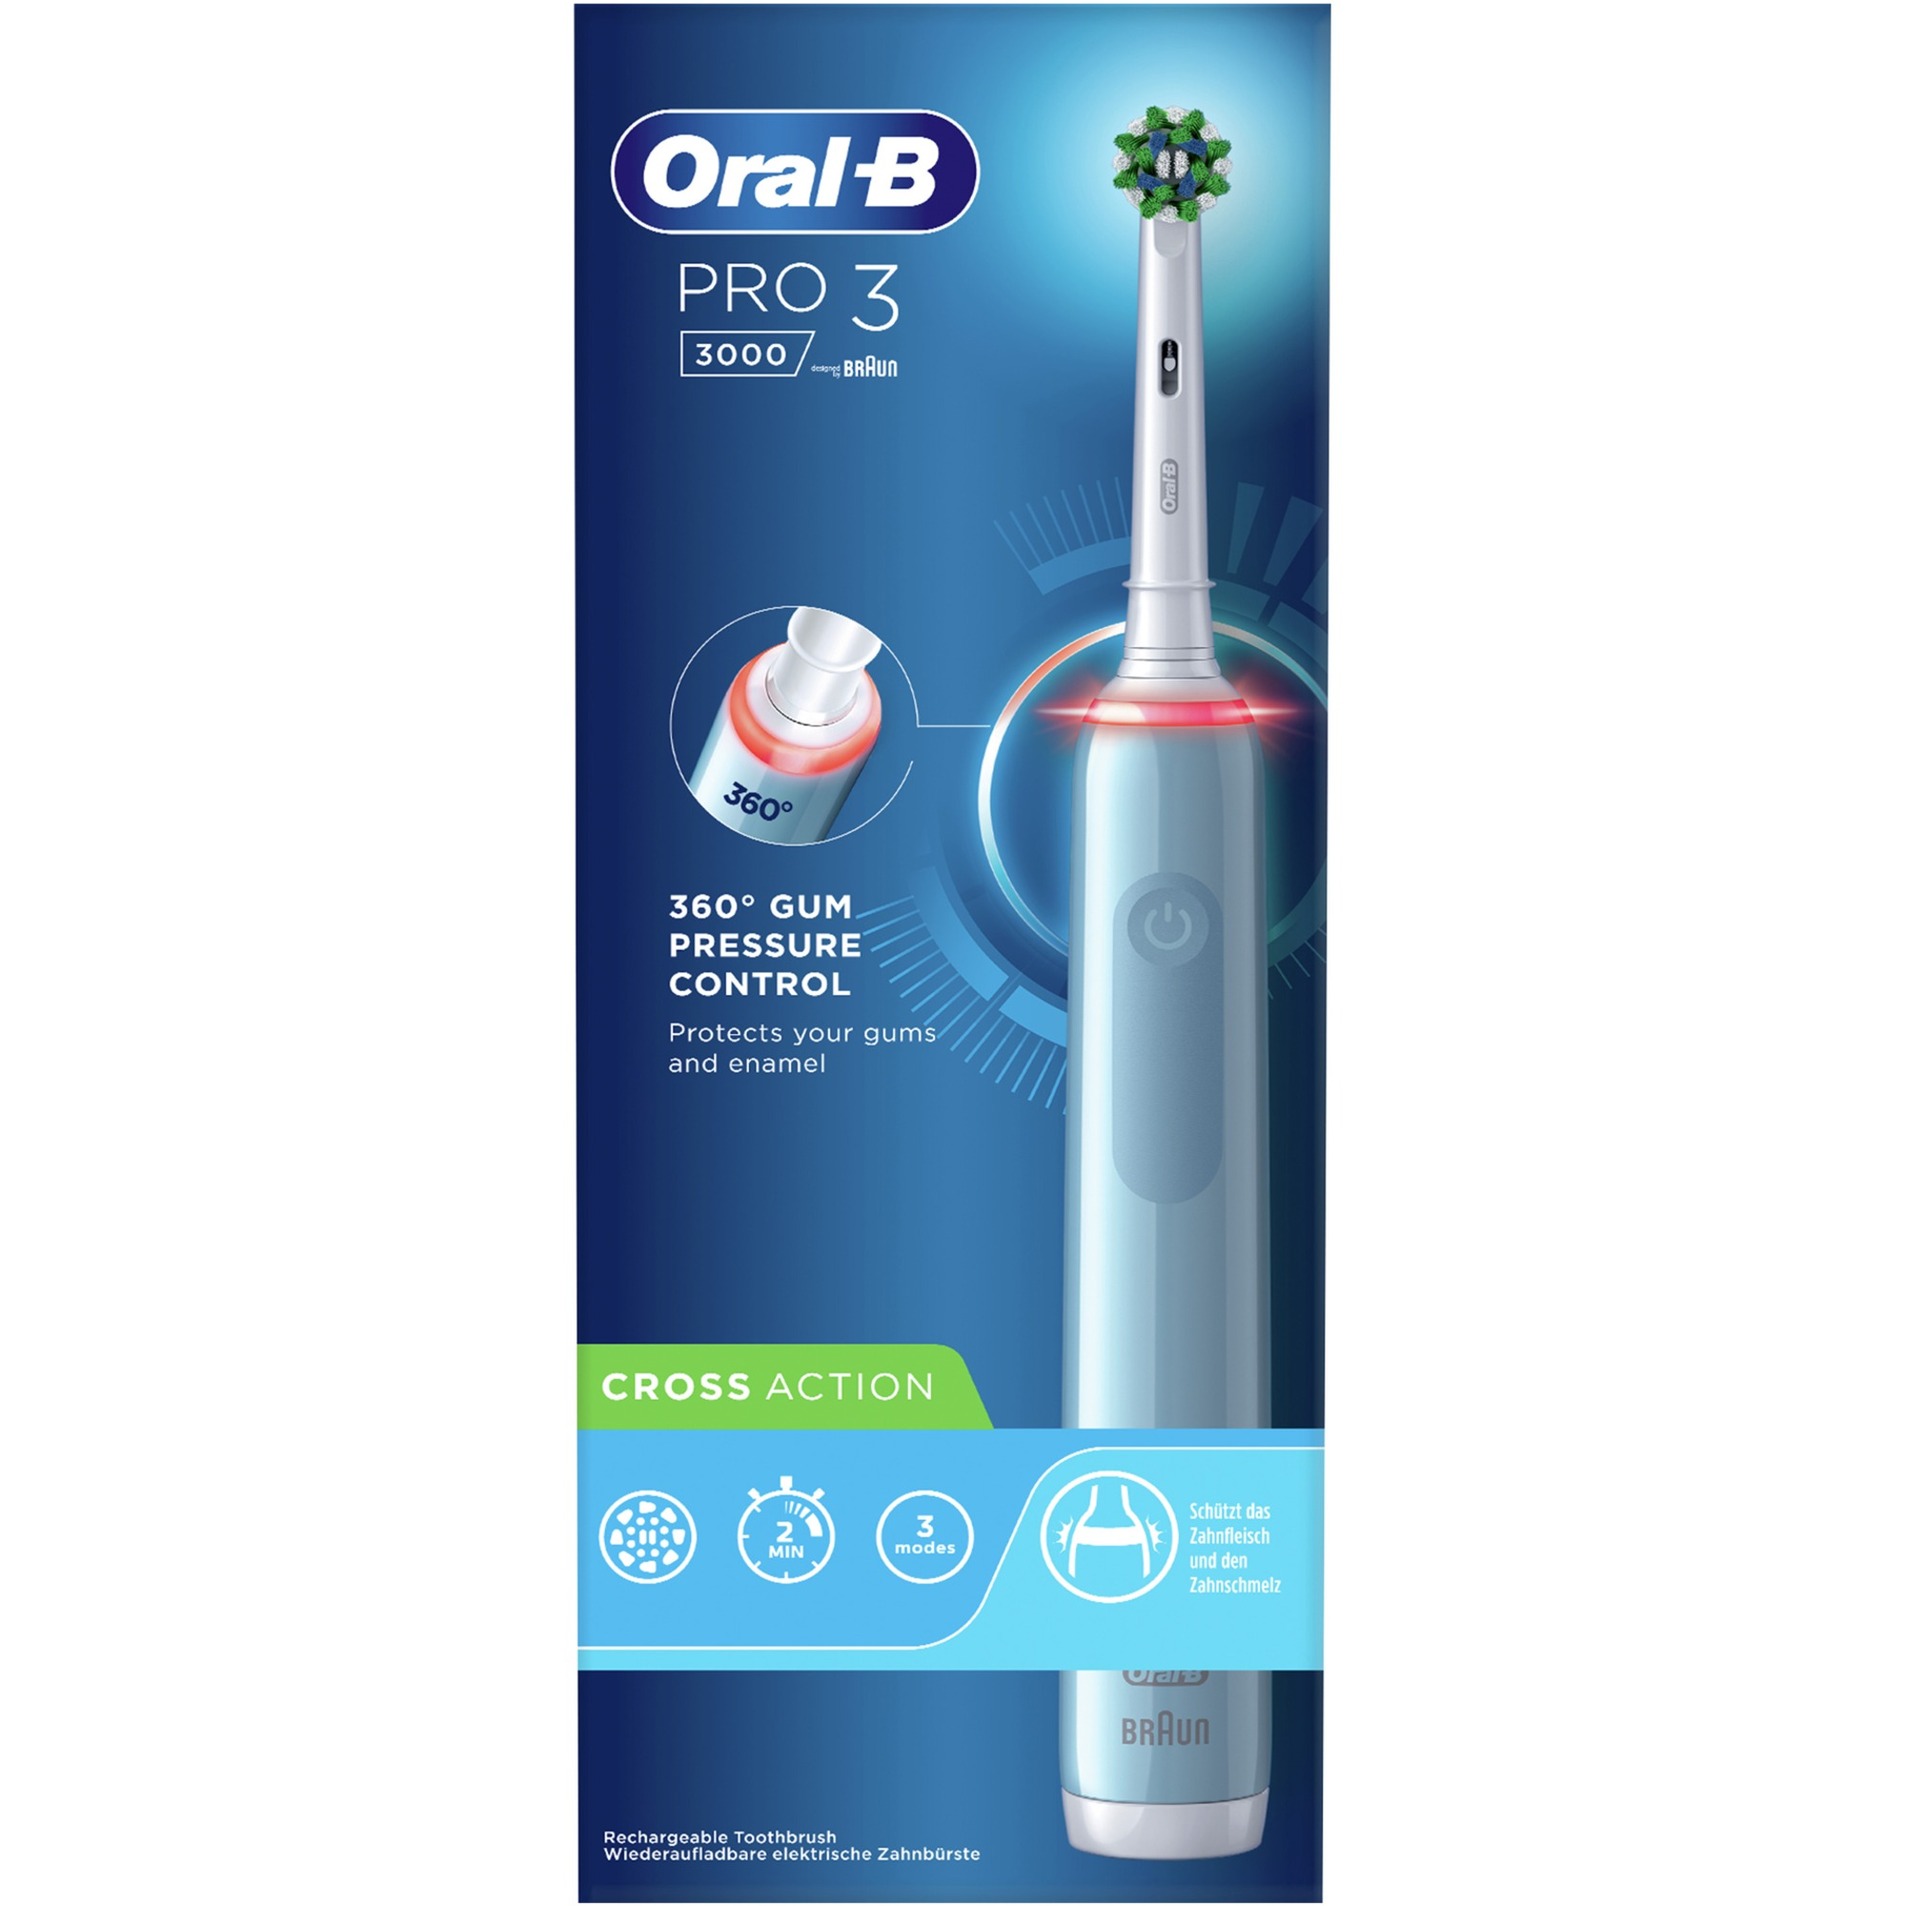 Image of Alternate - Oral-B Pro 3 3000 CrossAction, Elektrische Zahnbürste online einkaufen bei Alternate